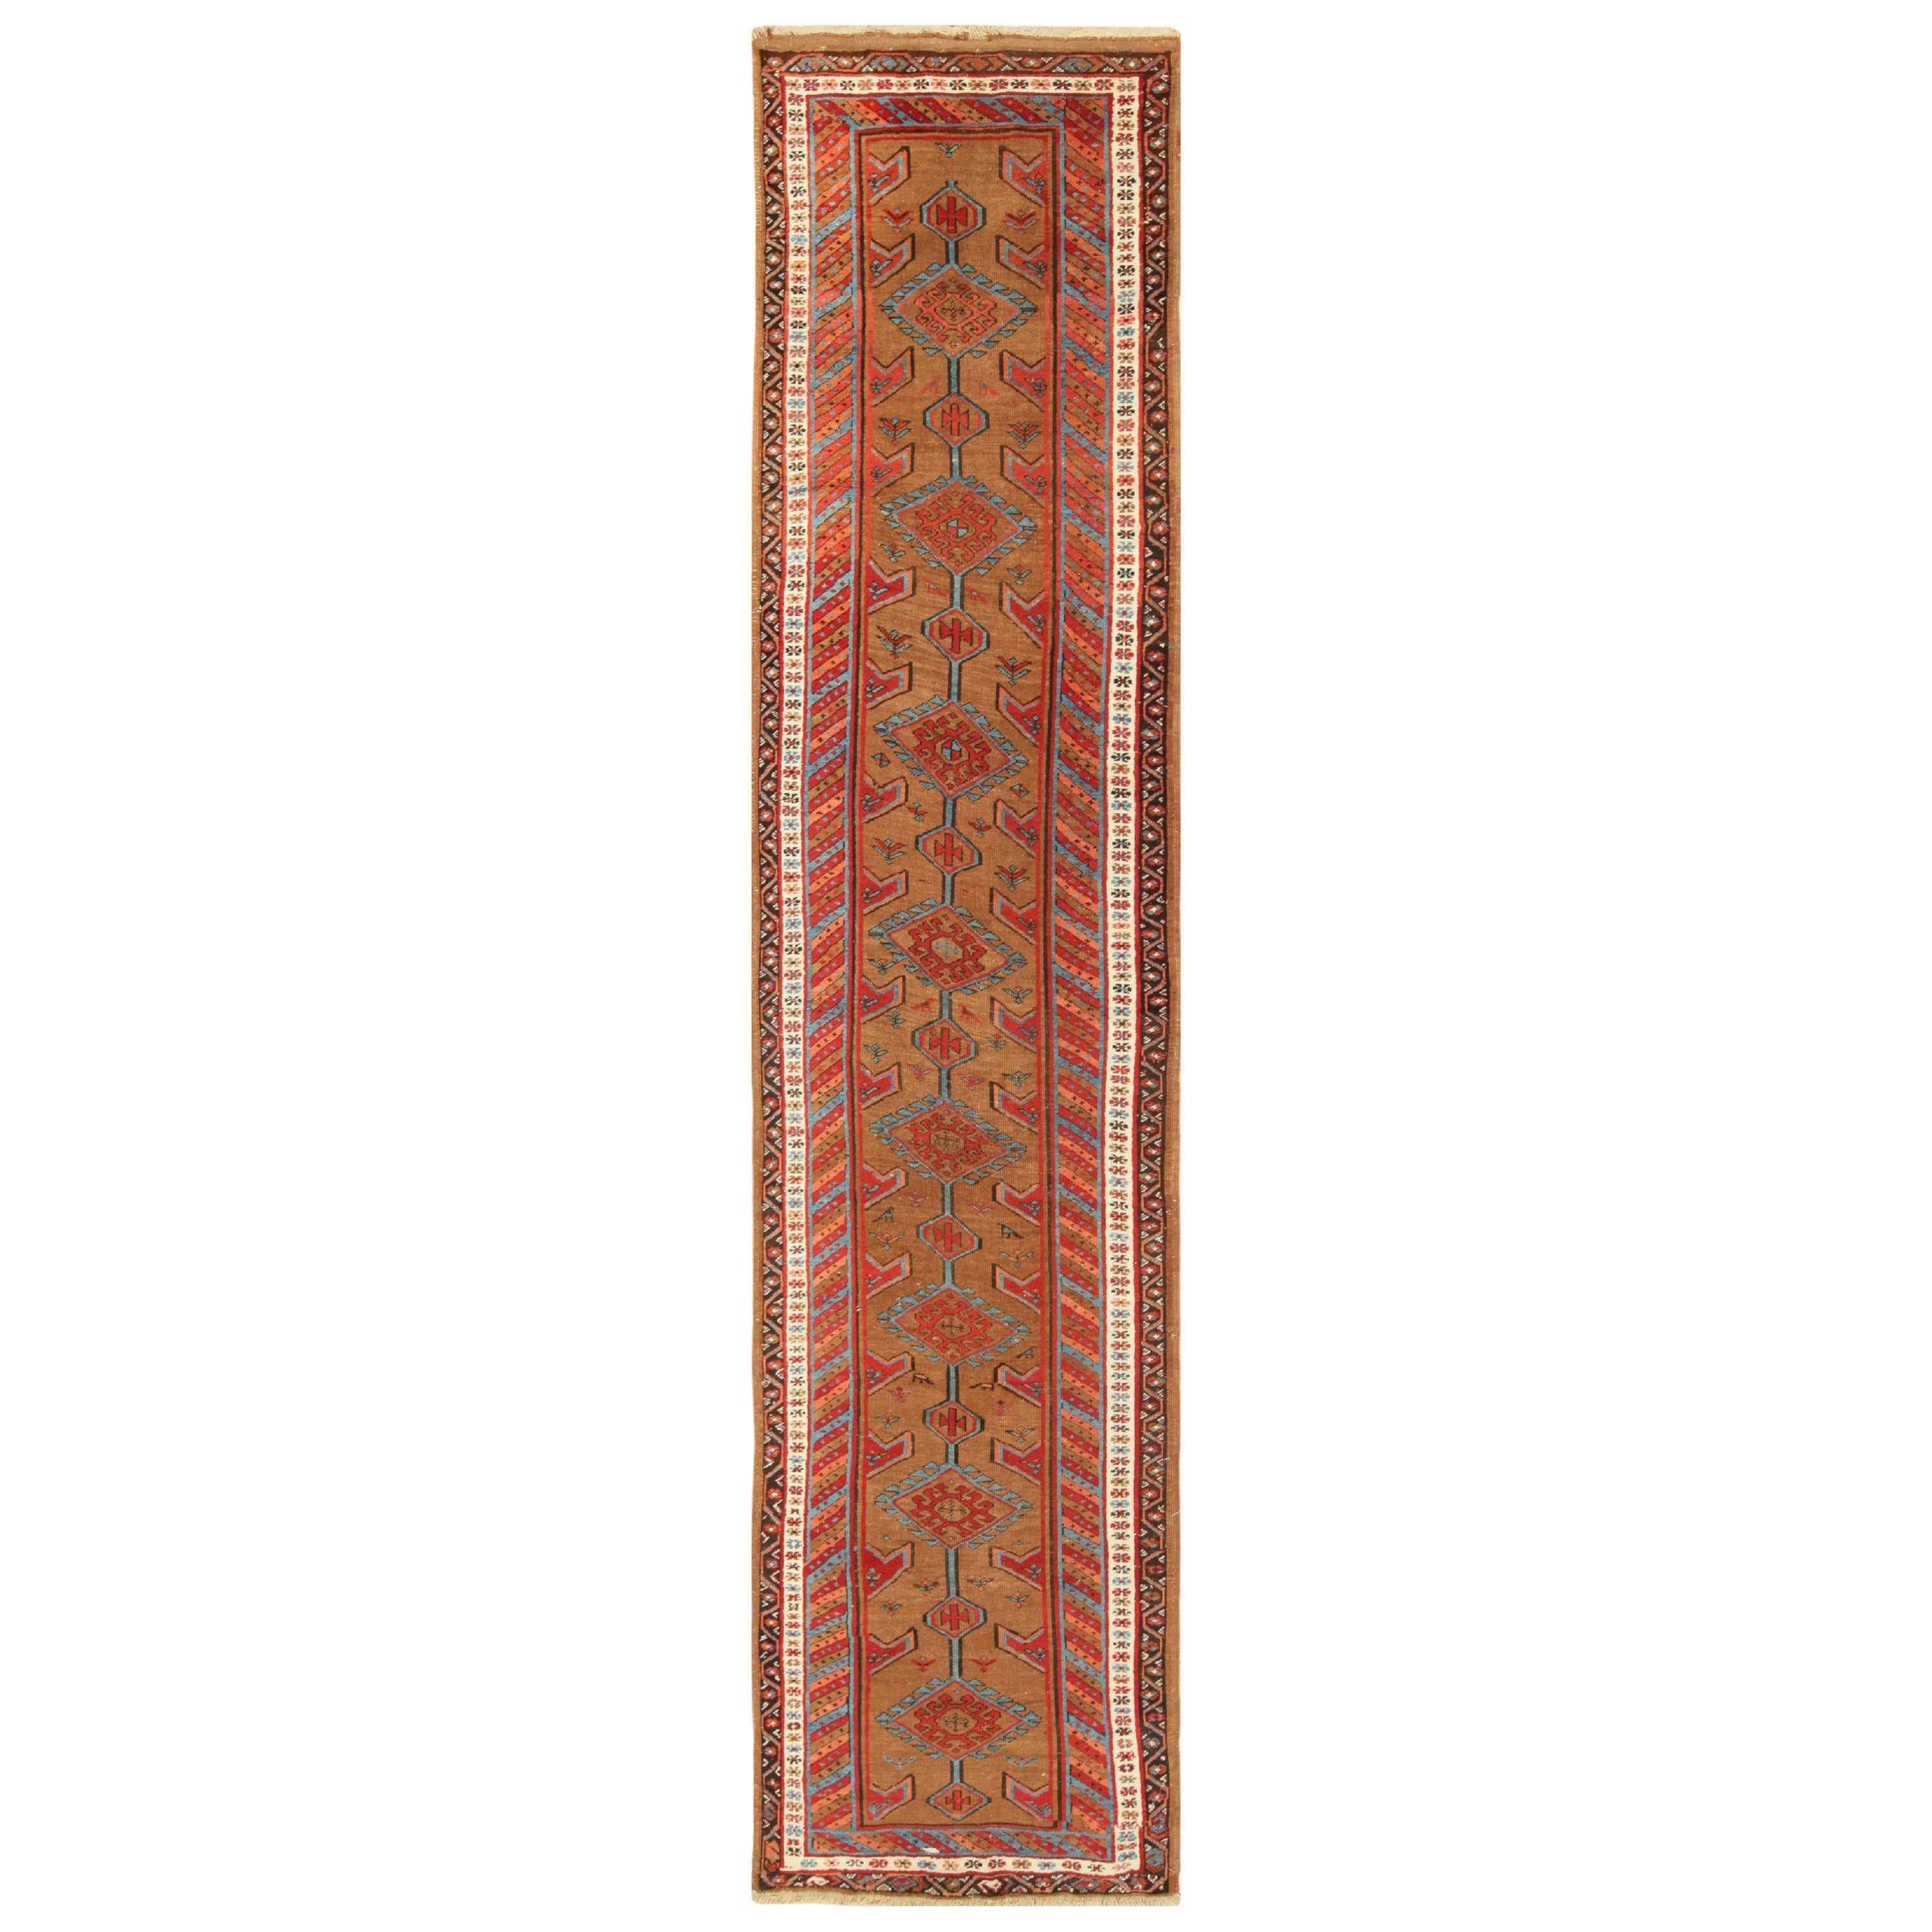 Nazmiyal Antique Tribal Persian Bakshaish Runner Rug. 3 ft 3 in x 14 ft 